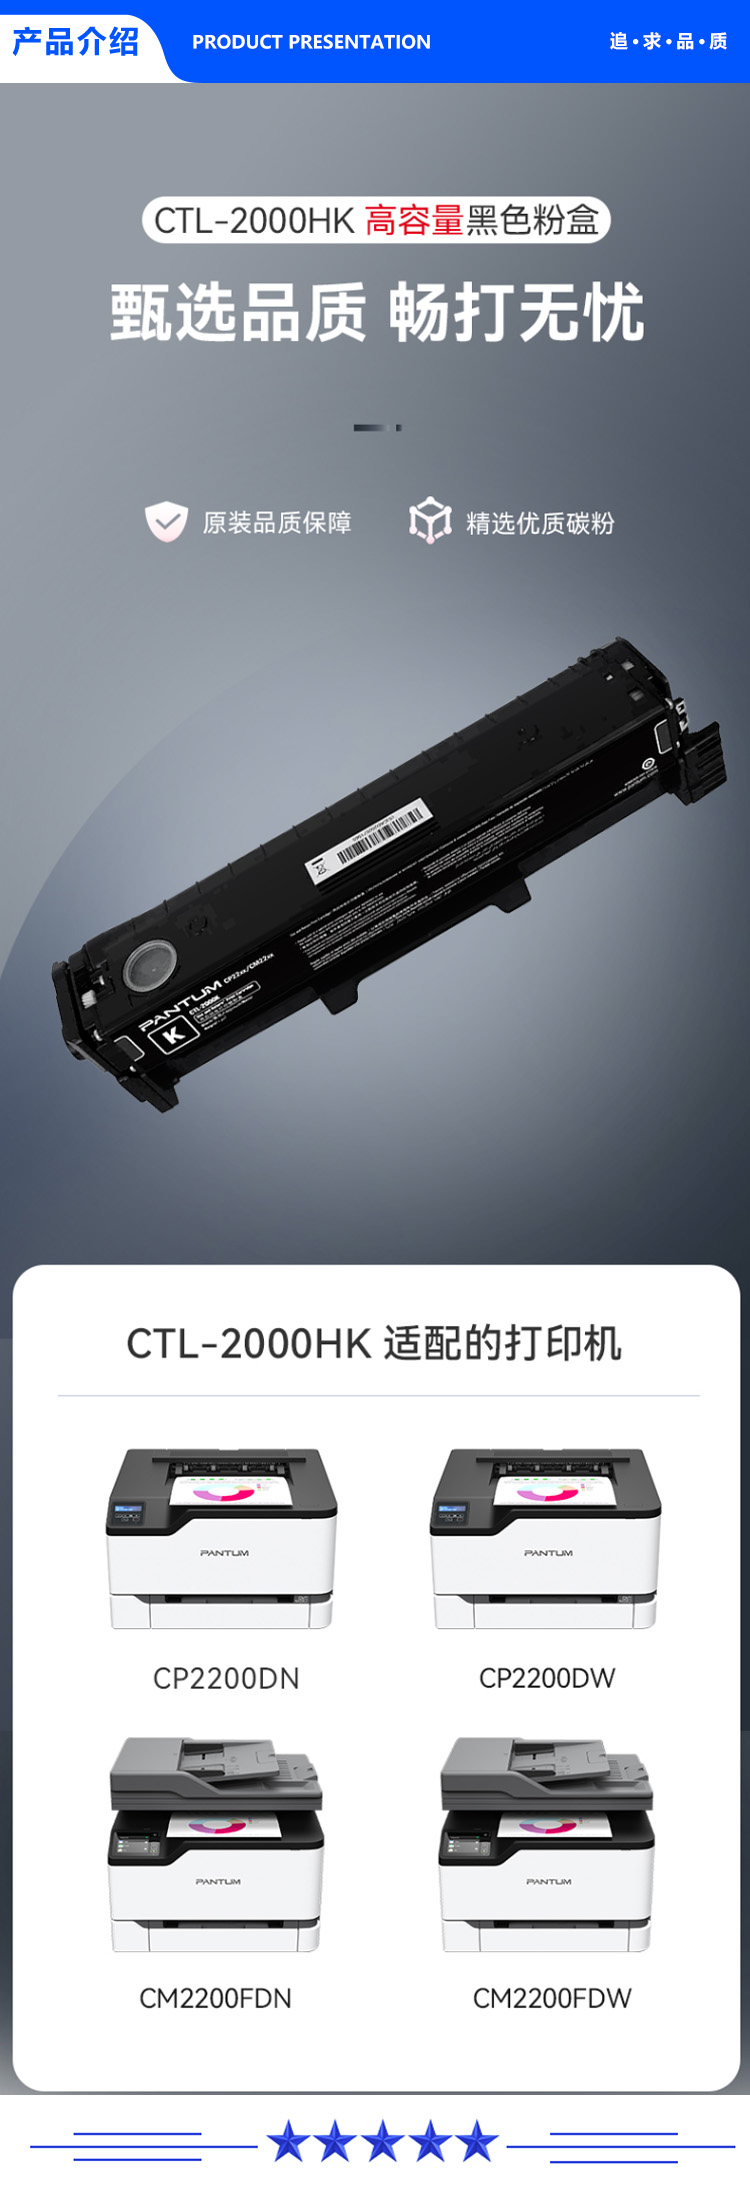 CTL-2000HK.jpg